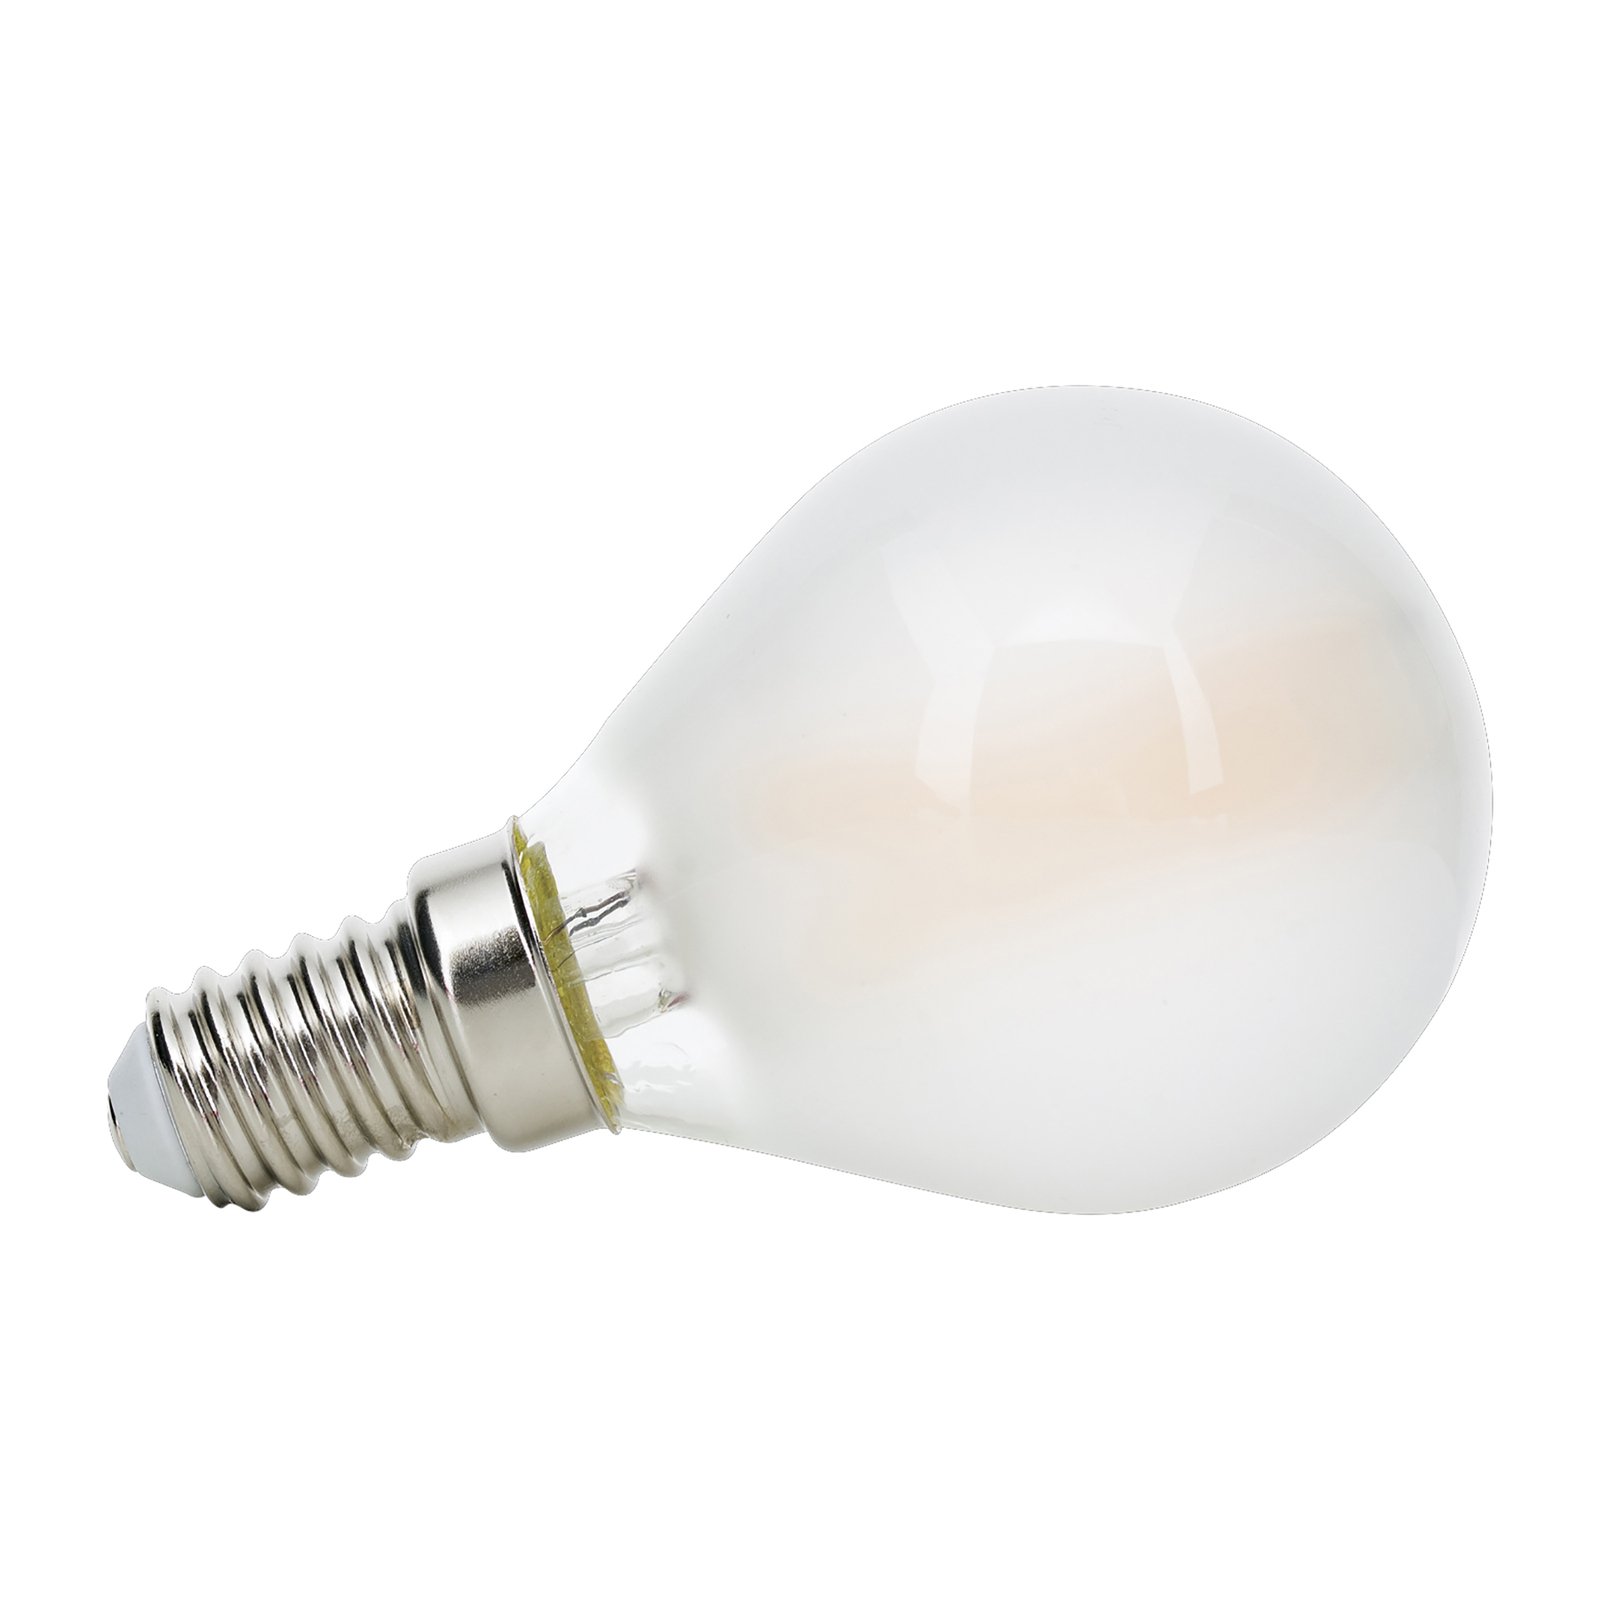 Golf ball LED bulb E14 5 W 2,700 K matt dimmable